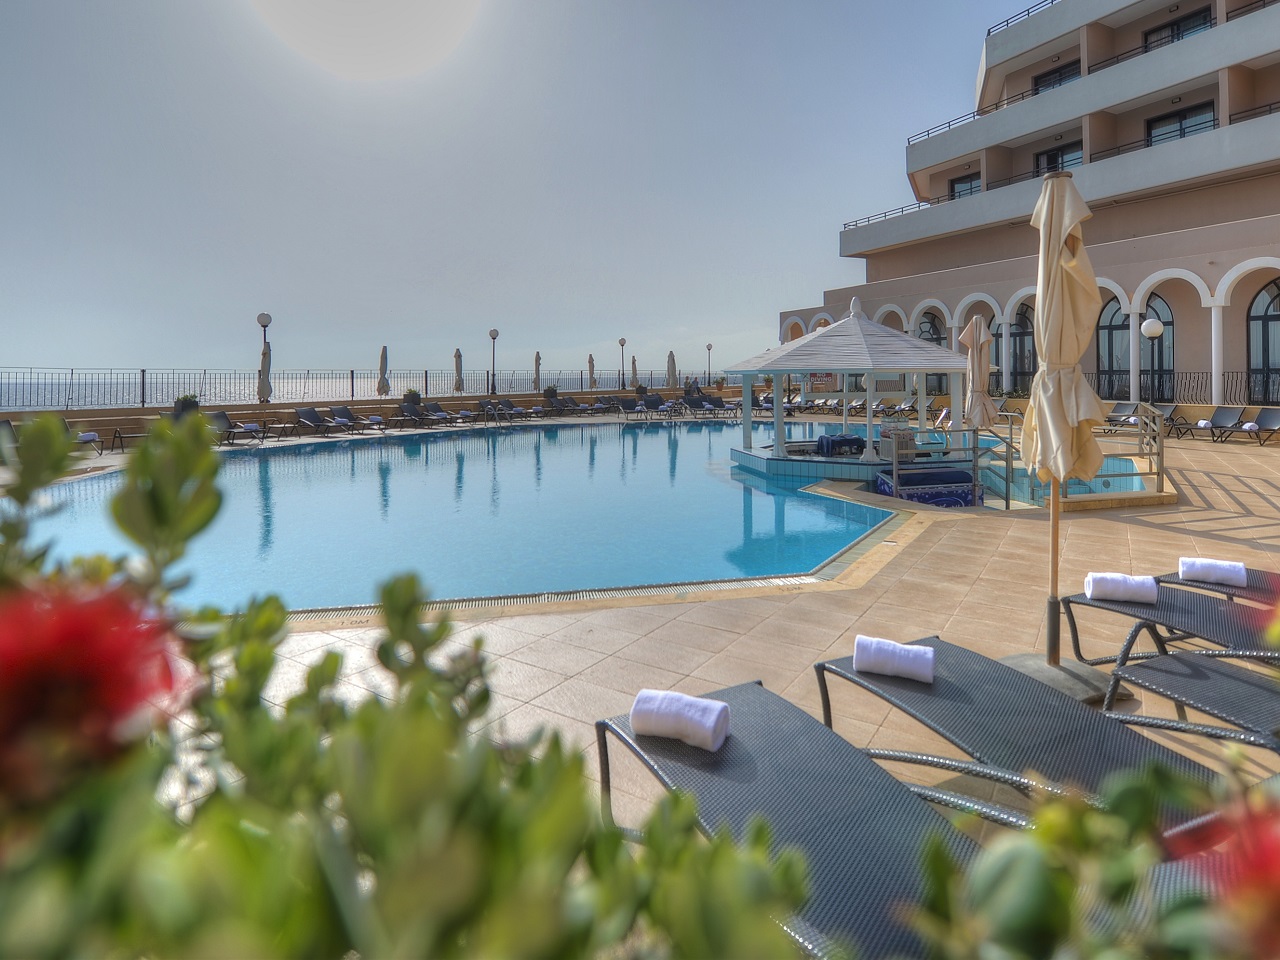 Radisson Blu Resort, Malta St. Julian’s (25)